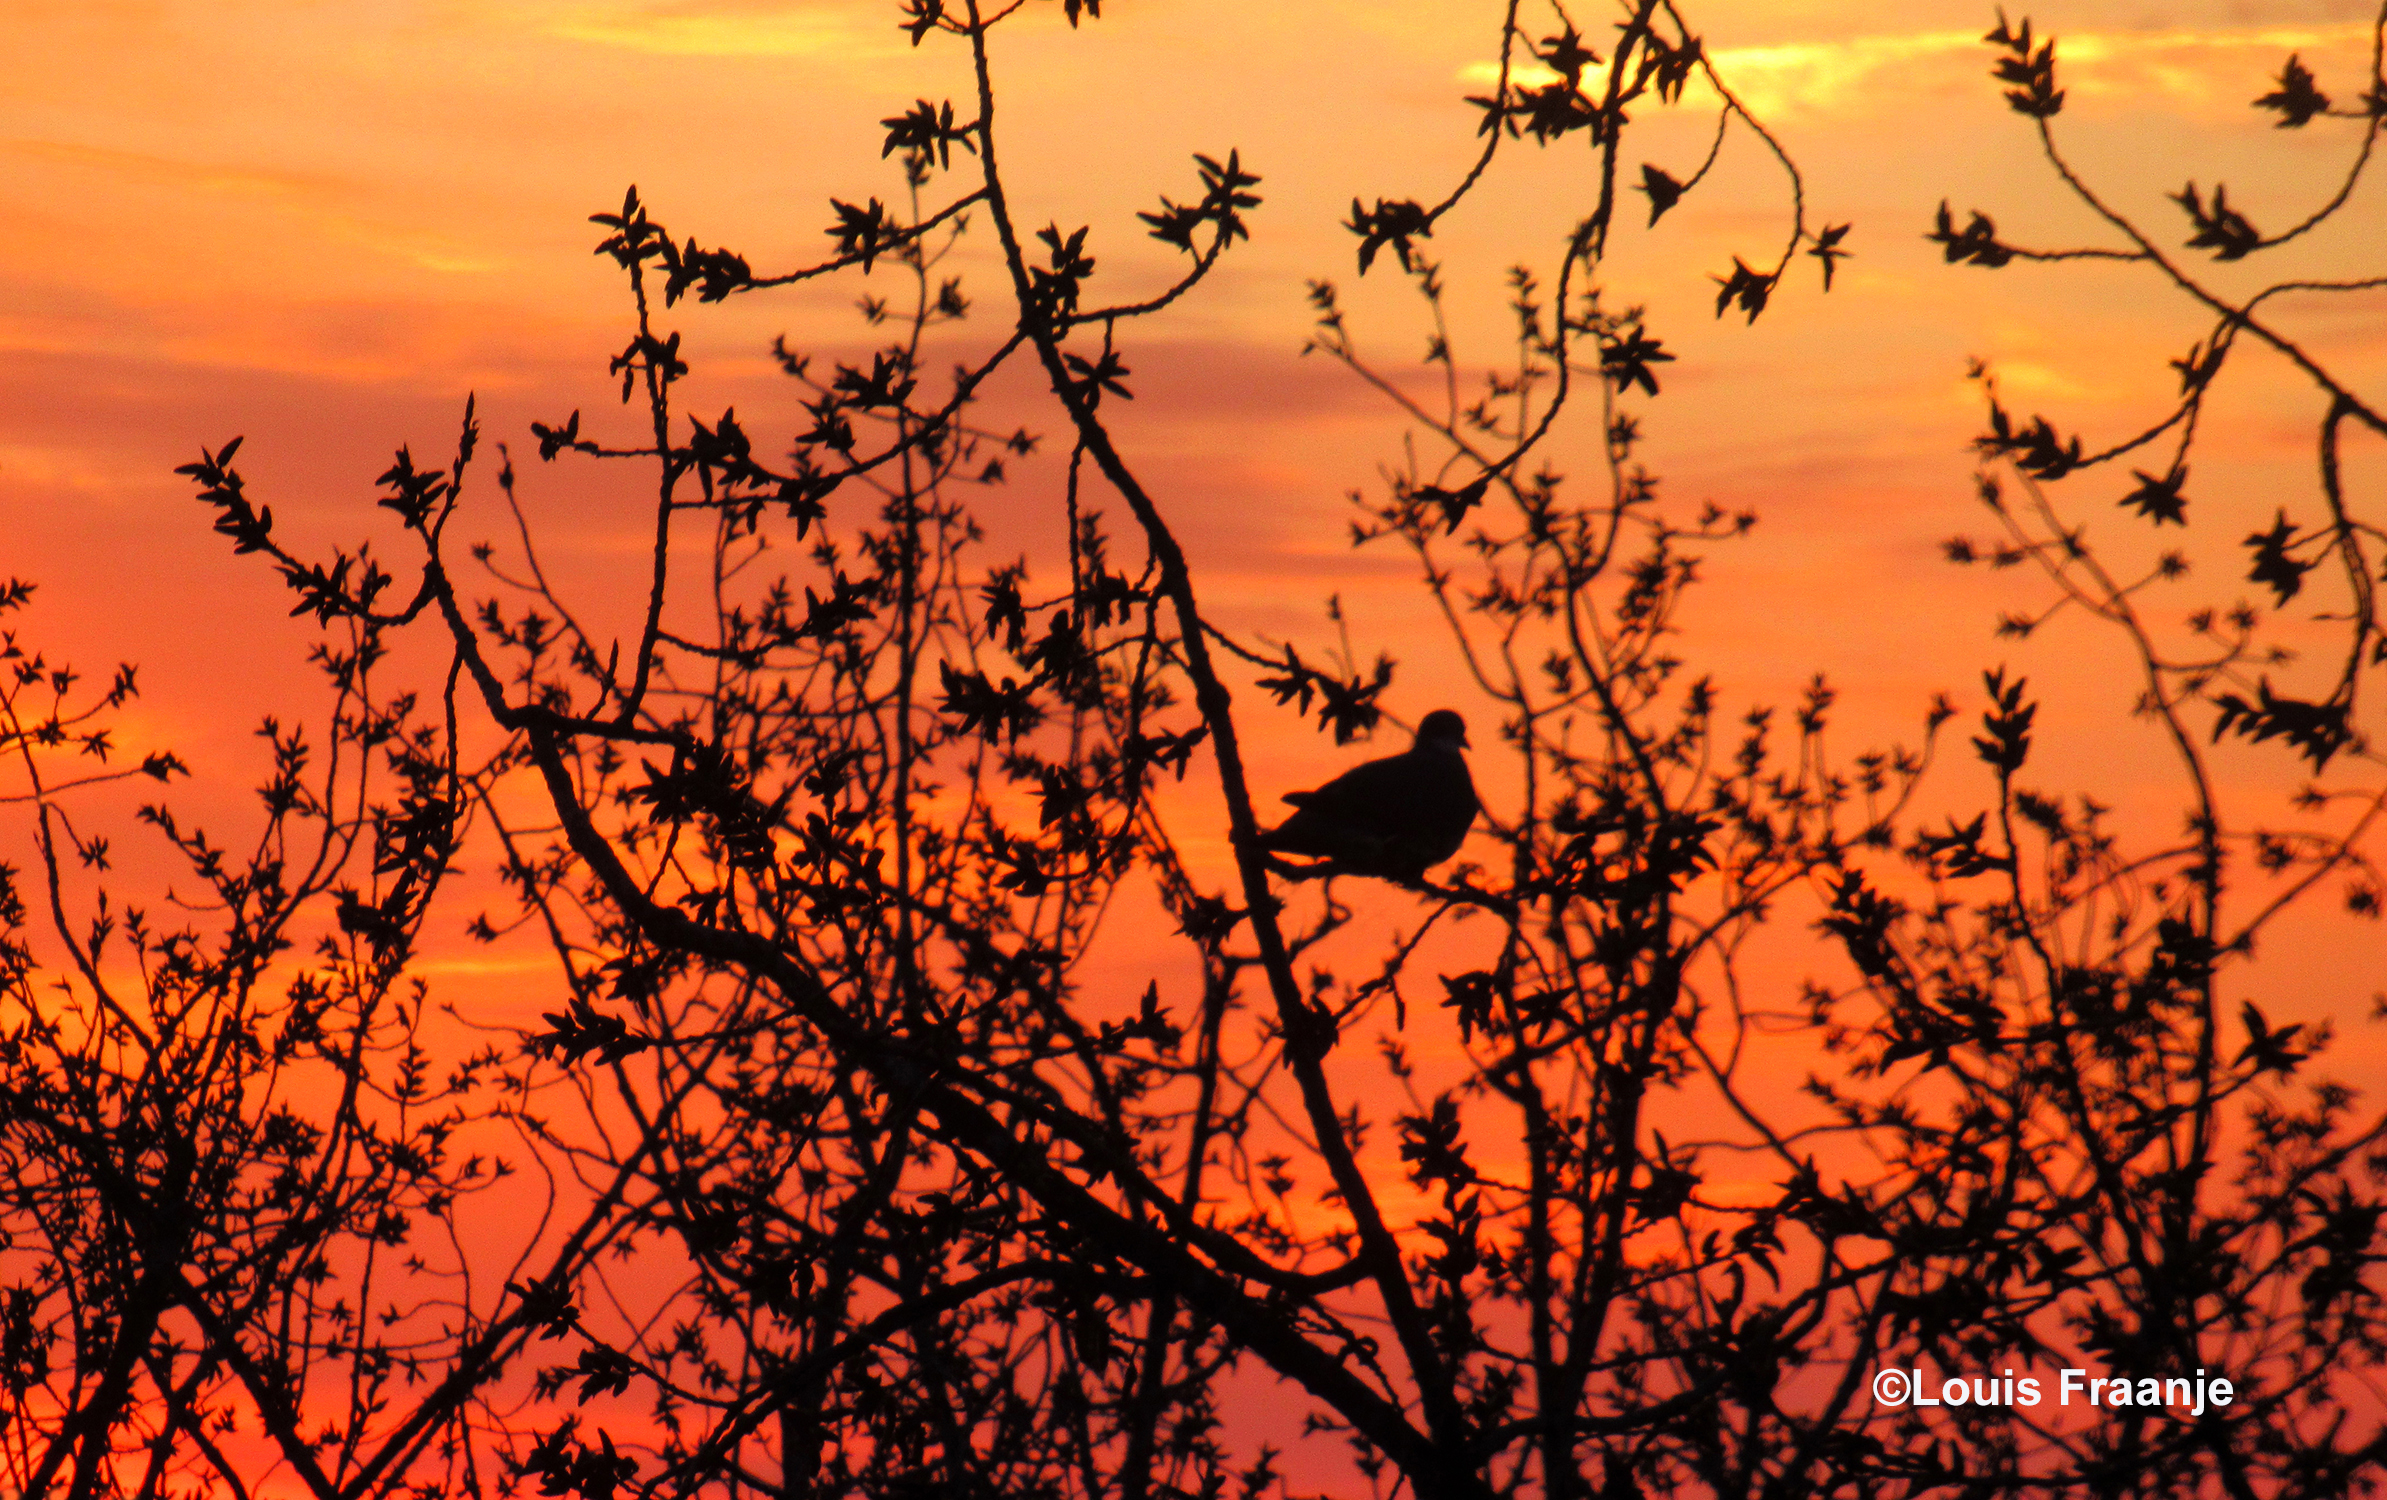 Het silhouet van een duif tekent zich prachtig af tegen de roodkleurige ochtendhemel - Foto: ©Louis Fraanje